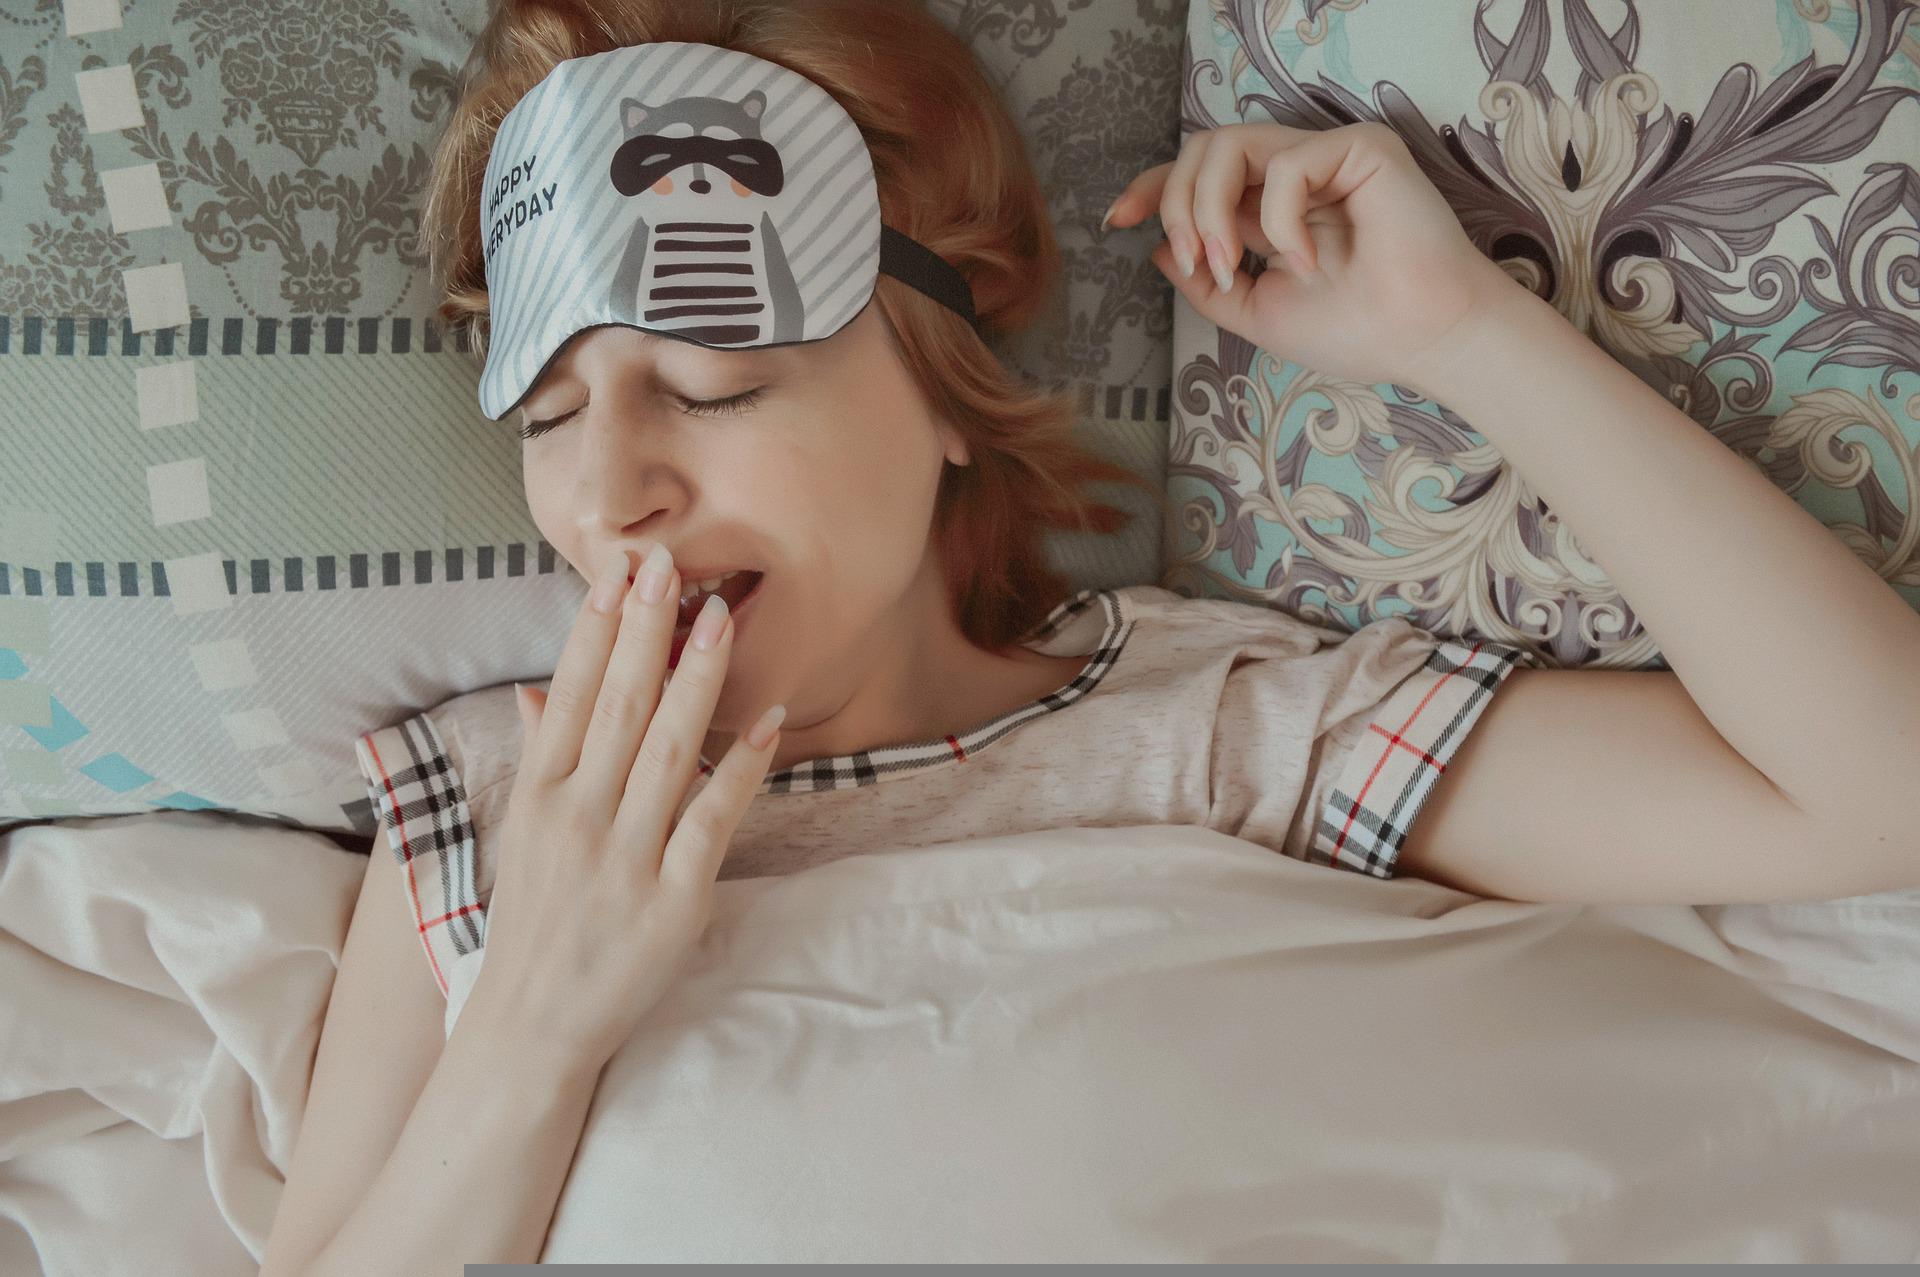 5 Cara Ampuh Atasi Insomnia, Buruan Dicoba Yuk Agar Tidur Berkualitas